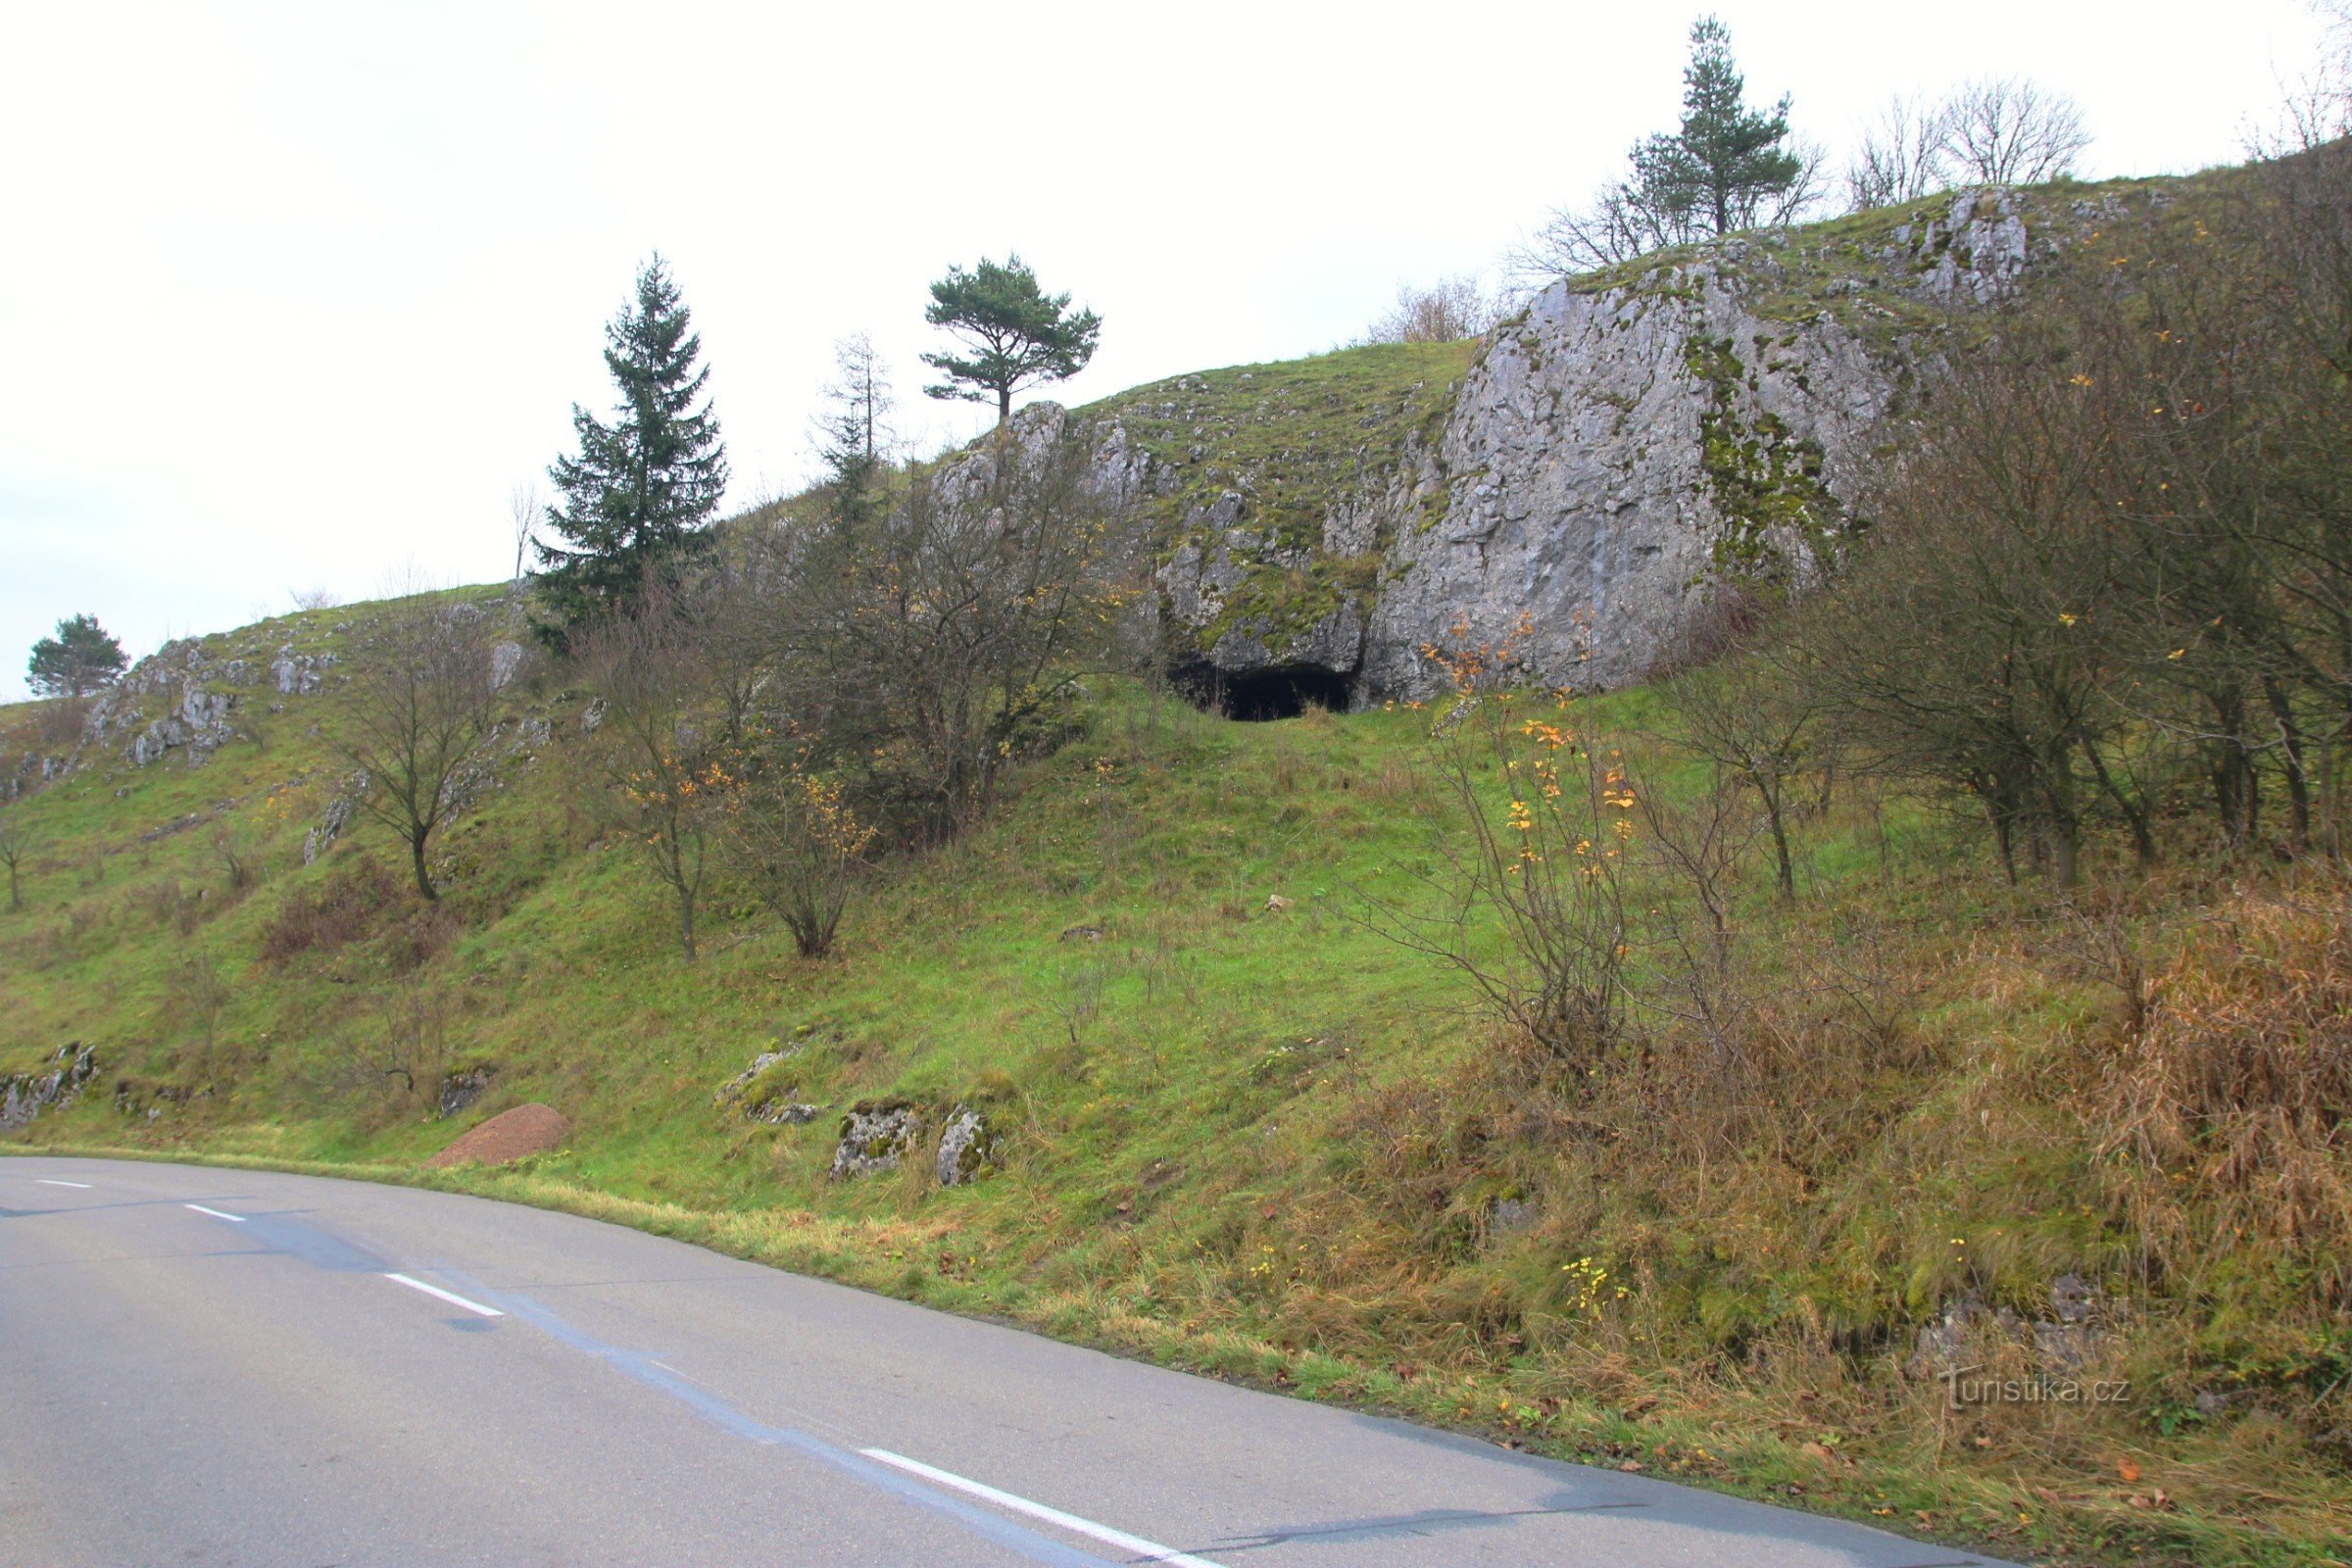 洞窟の入り口は道路からすぐに見える